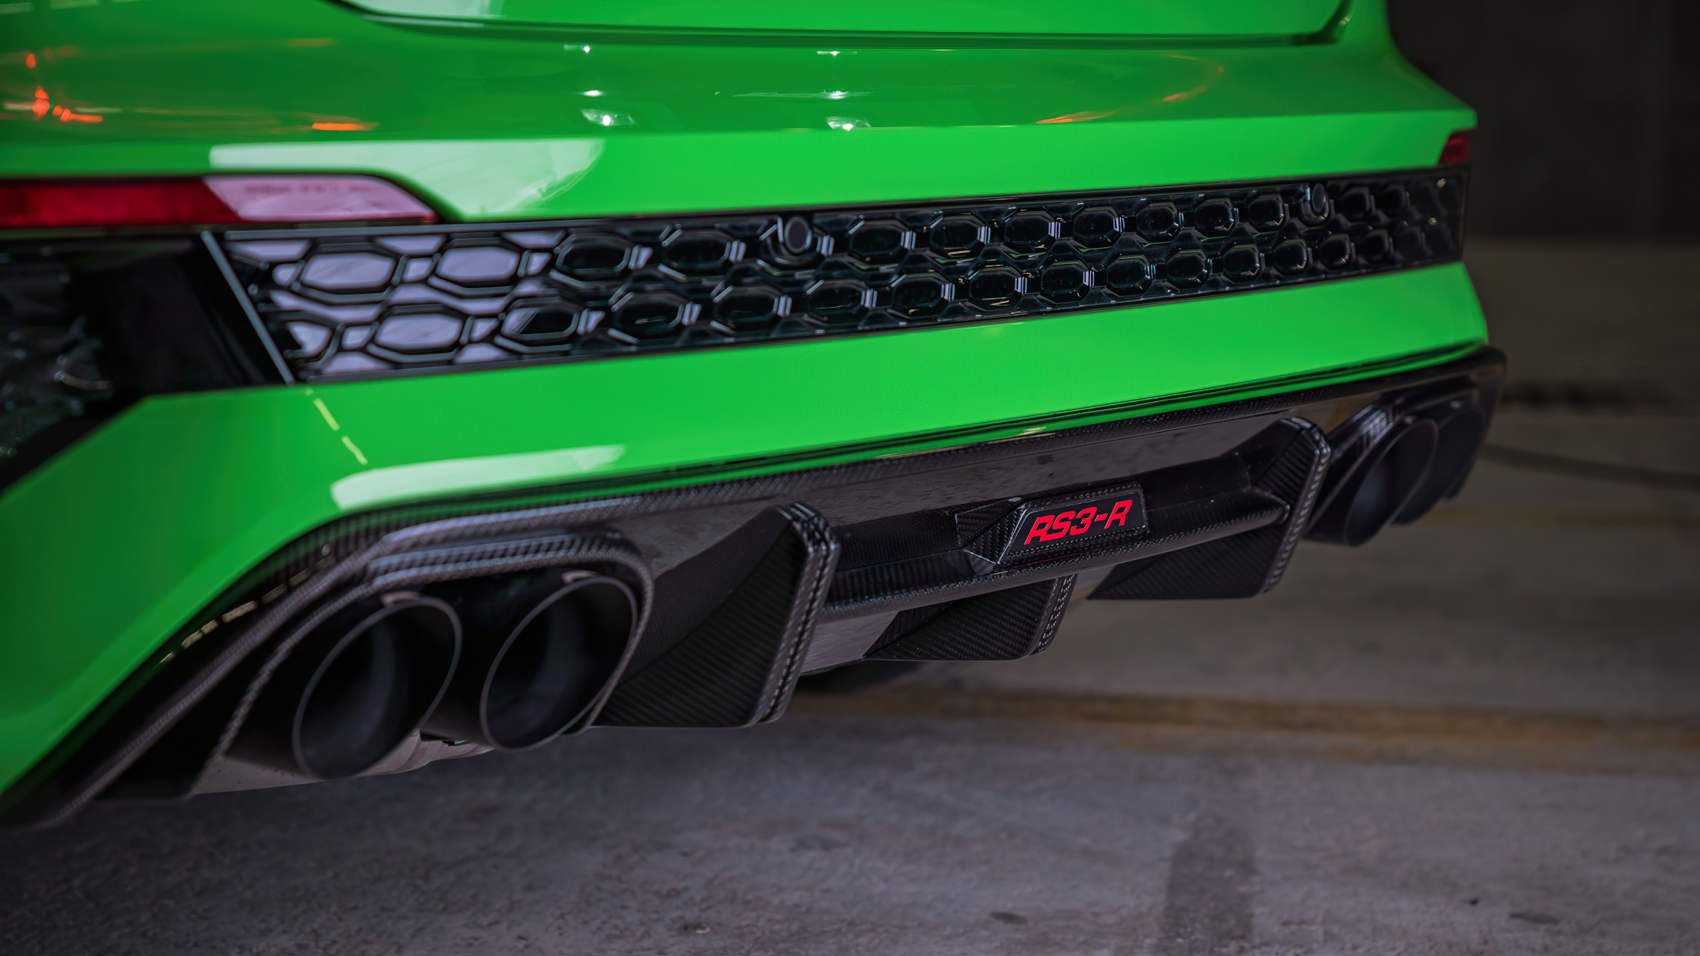 Audi ABT RS3-R - karbonowe dodatki i nowe końcówki wydechu